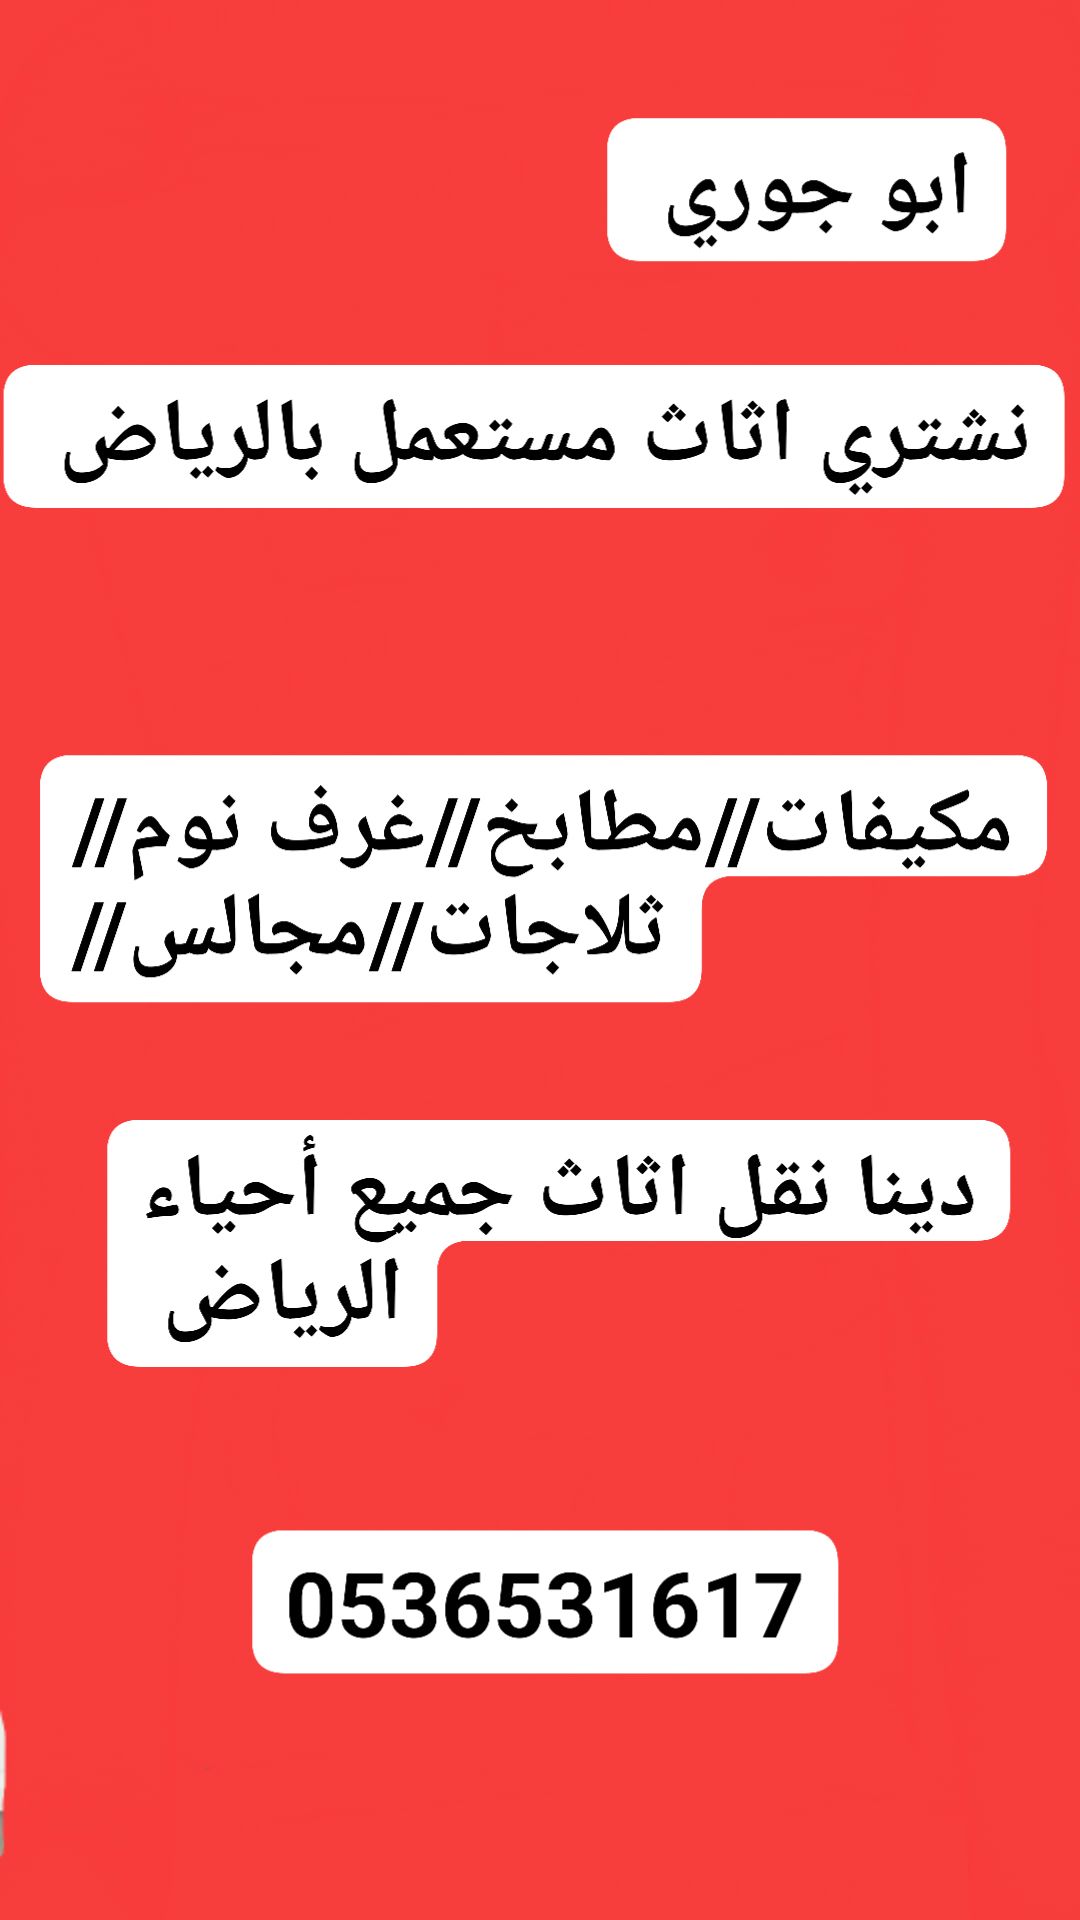 راعي شراء اثاث مستعمل شمال الرياض 0536531617ابو مريم